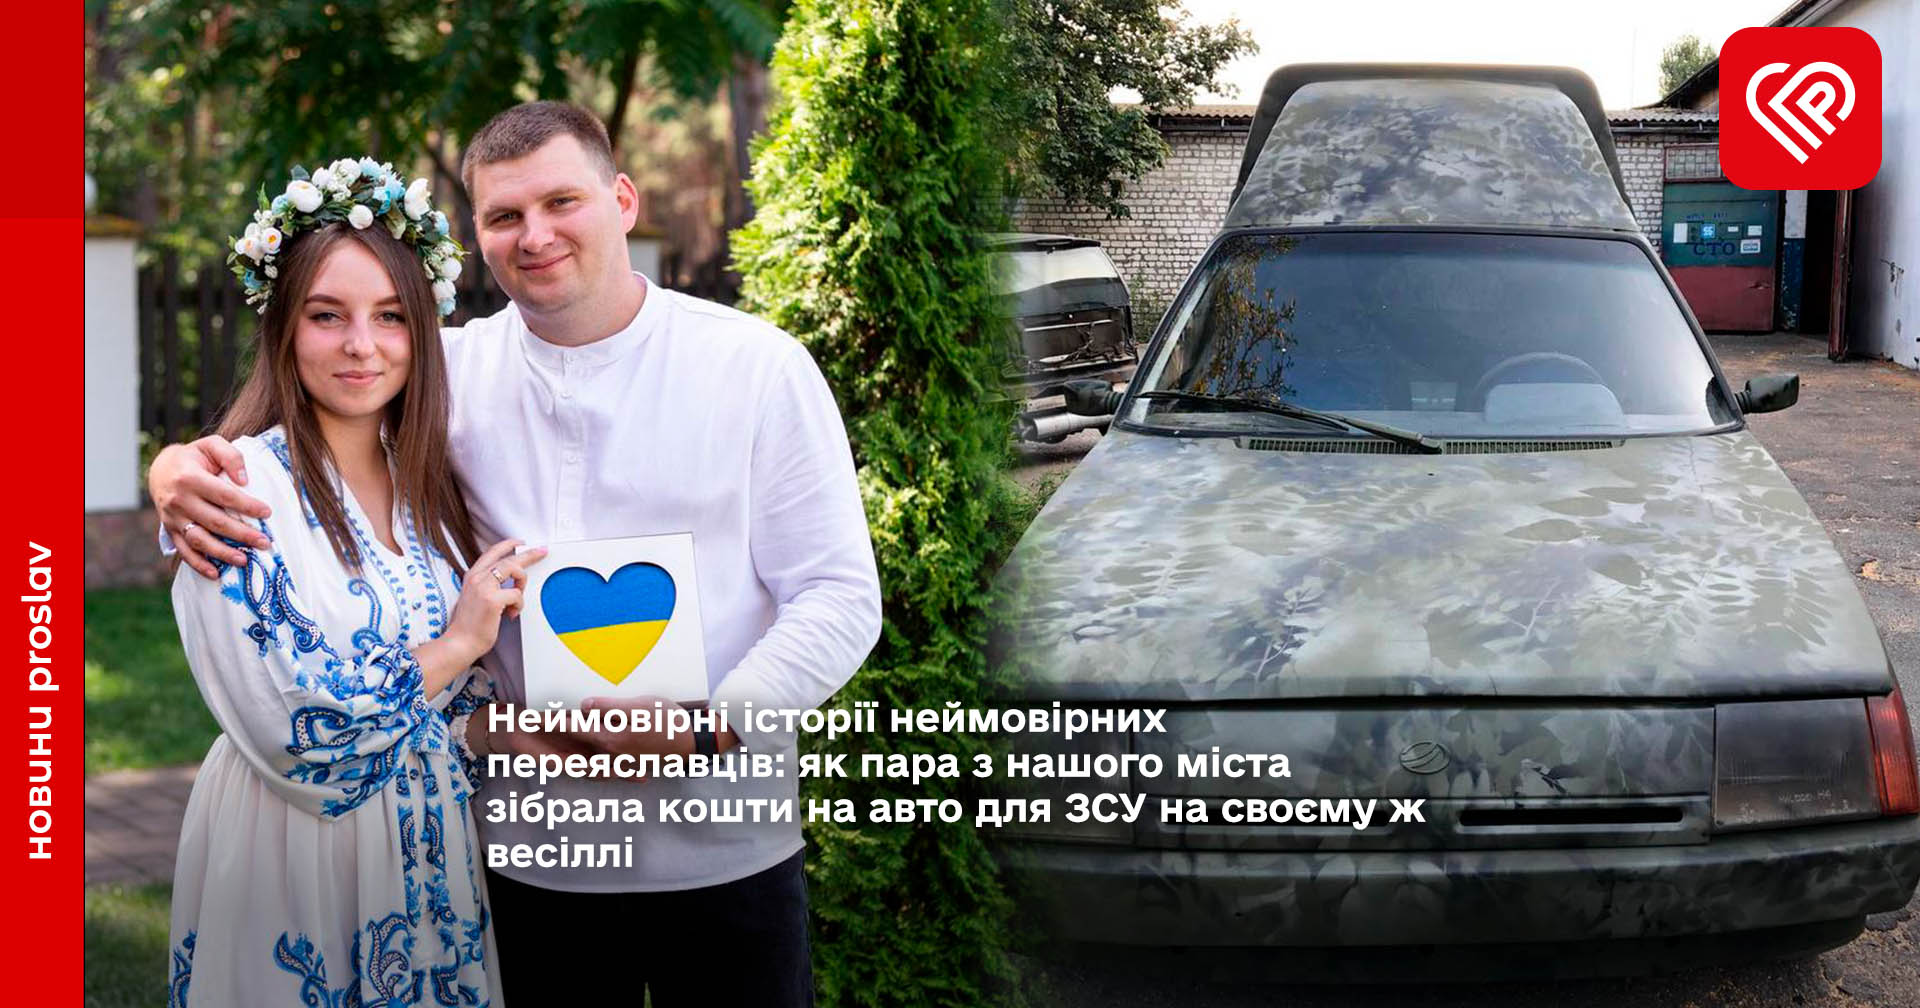 Неймовірні історії неймовірних переяславців: як пара з нашого міста зібрала кошти на авто для ЗСУ на своєму ж весіллі